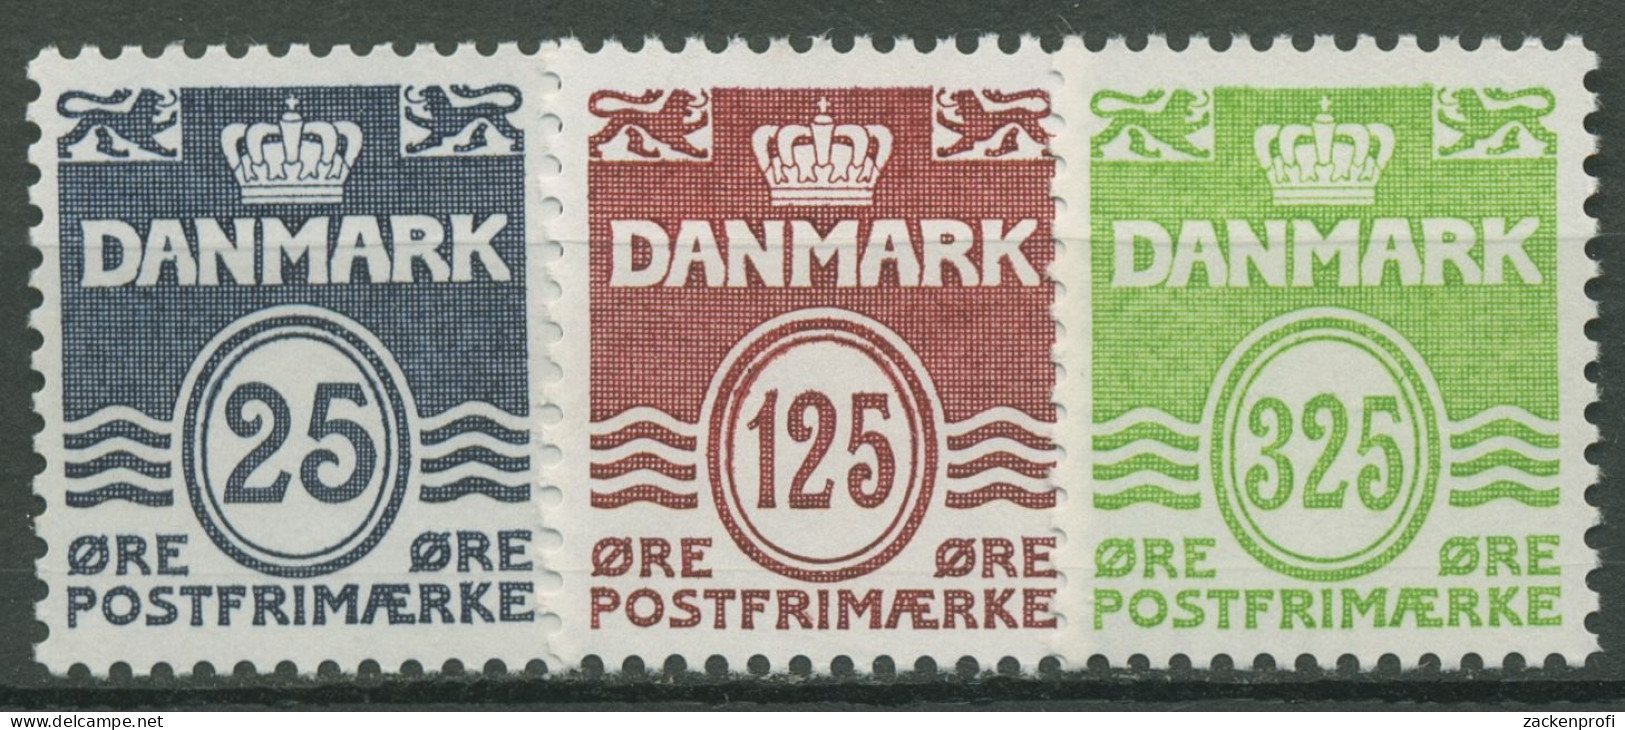 Dänemark 1990 Freimarken Wellenlinien 963/65 Postfrisch - Unused Stamps